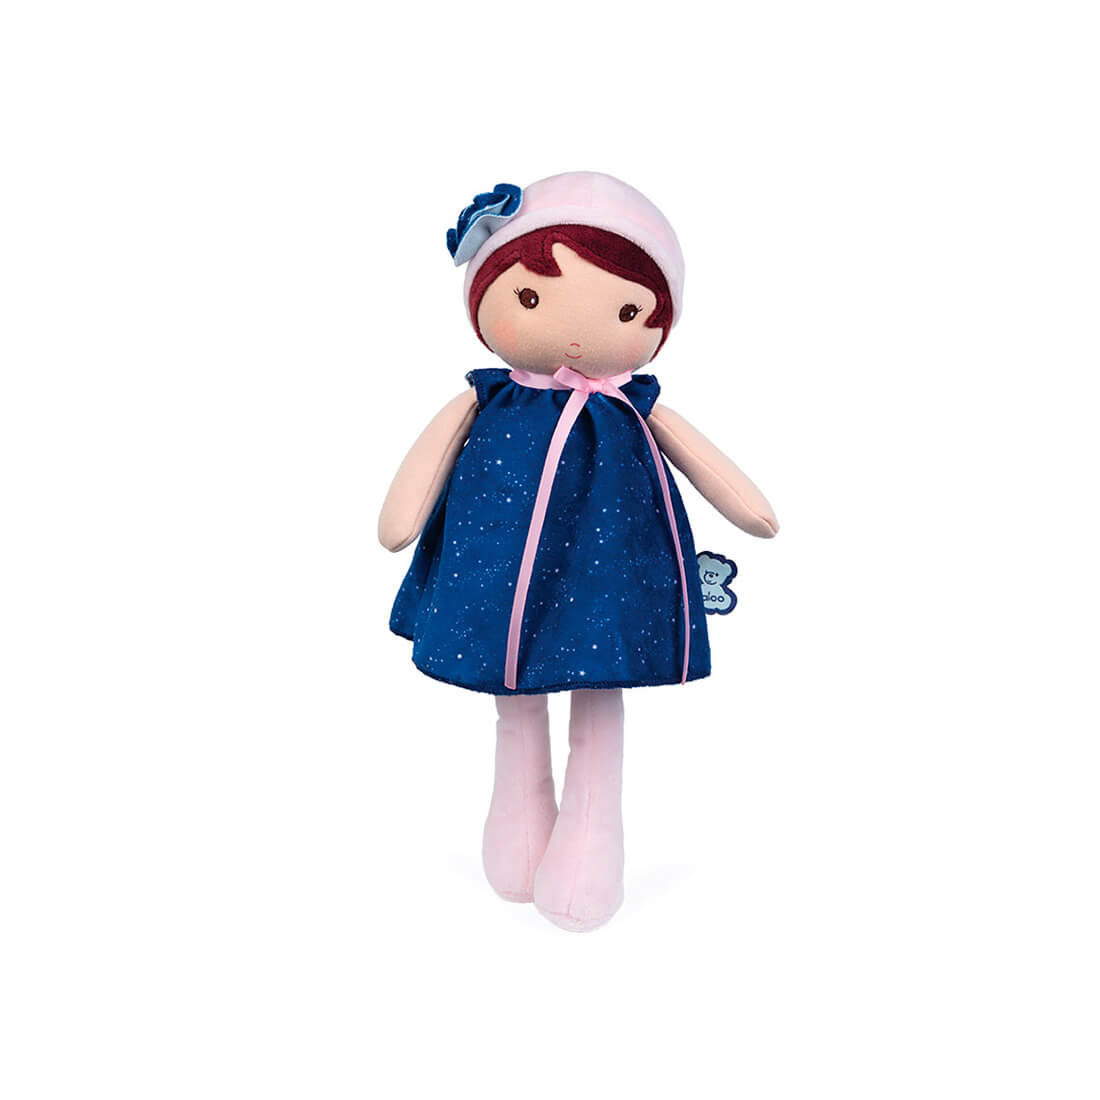 Текстильная музыкальная кукла Kaloo "Aurore", в синем платье, серия "Tendresse de Kaloo", 32 см - фото №1